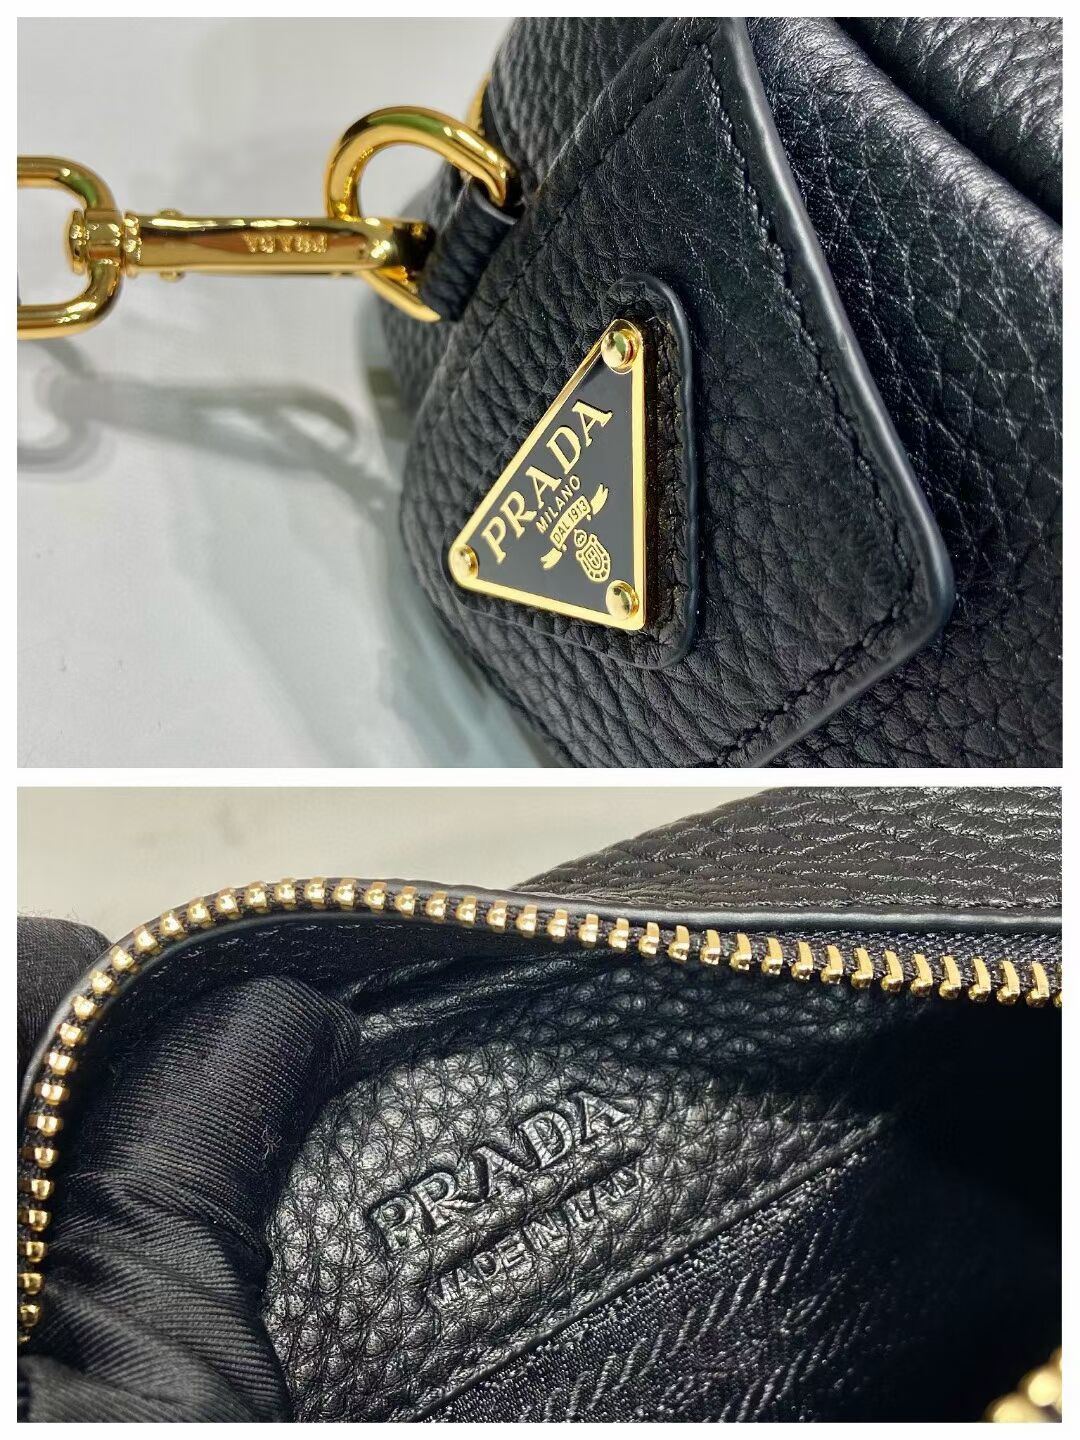 Prada Leather bag with shoulder strap 1DH781 black